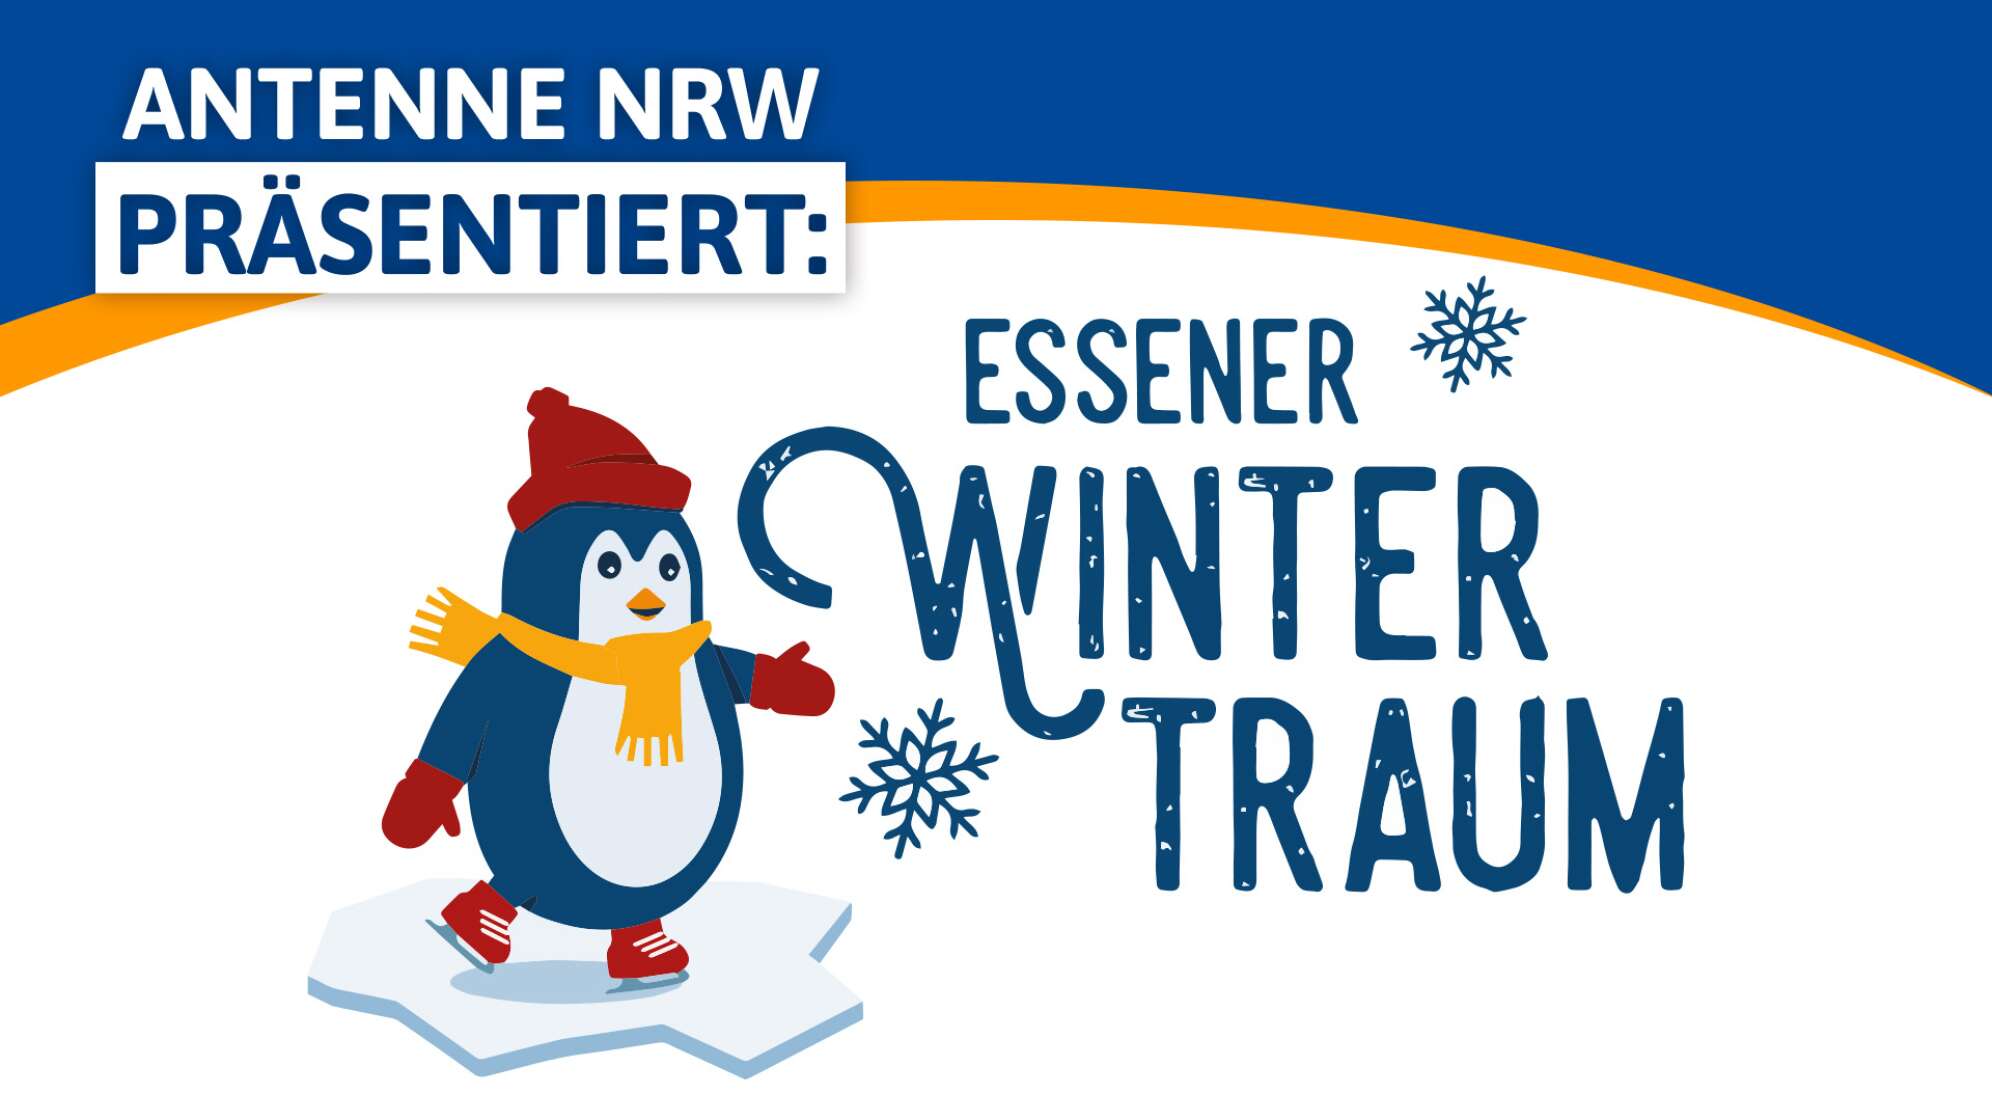 ANTENNE NRW präsentiert den Essener Wintertraum